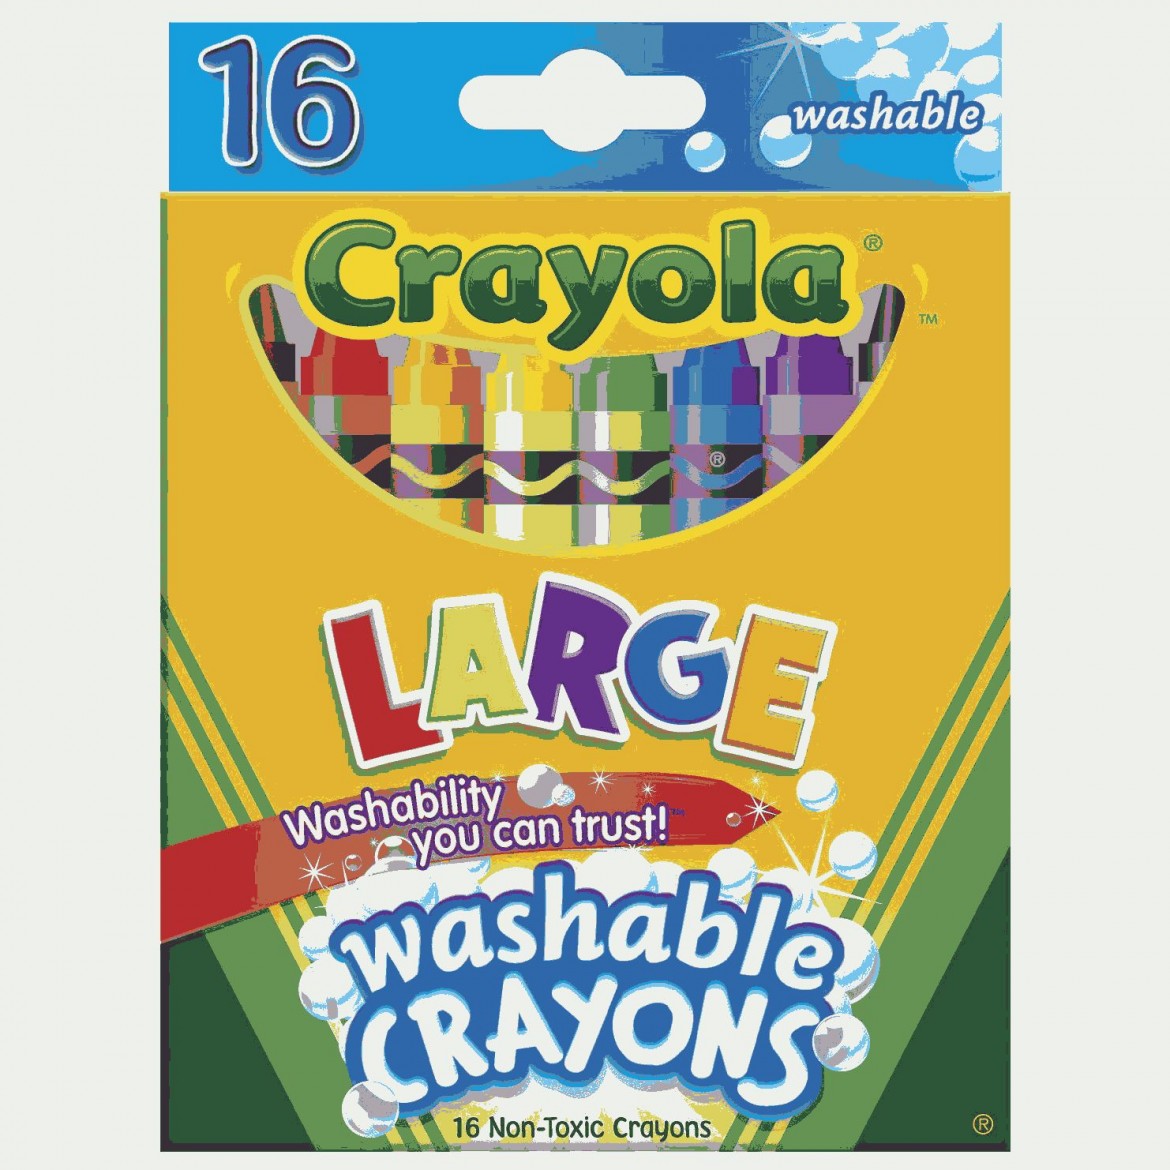 Crayola-Washable-Crayons.jpg